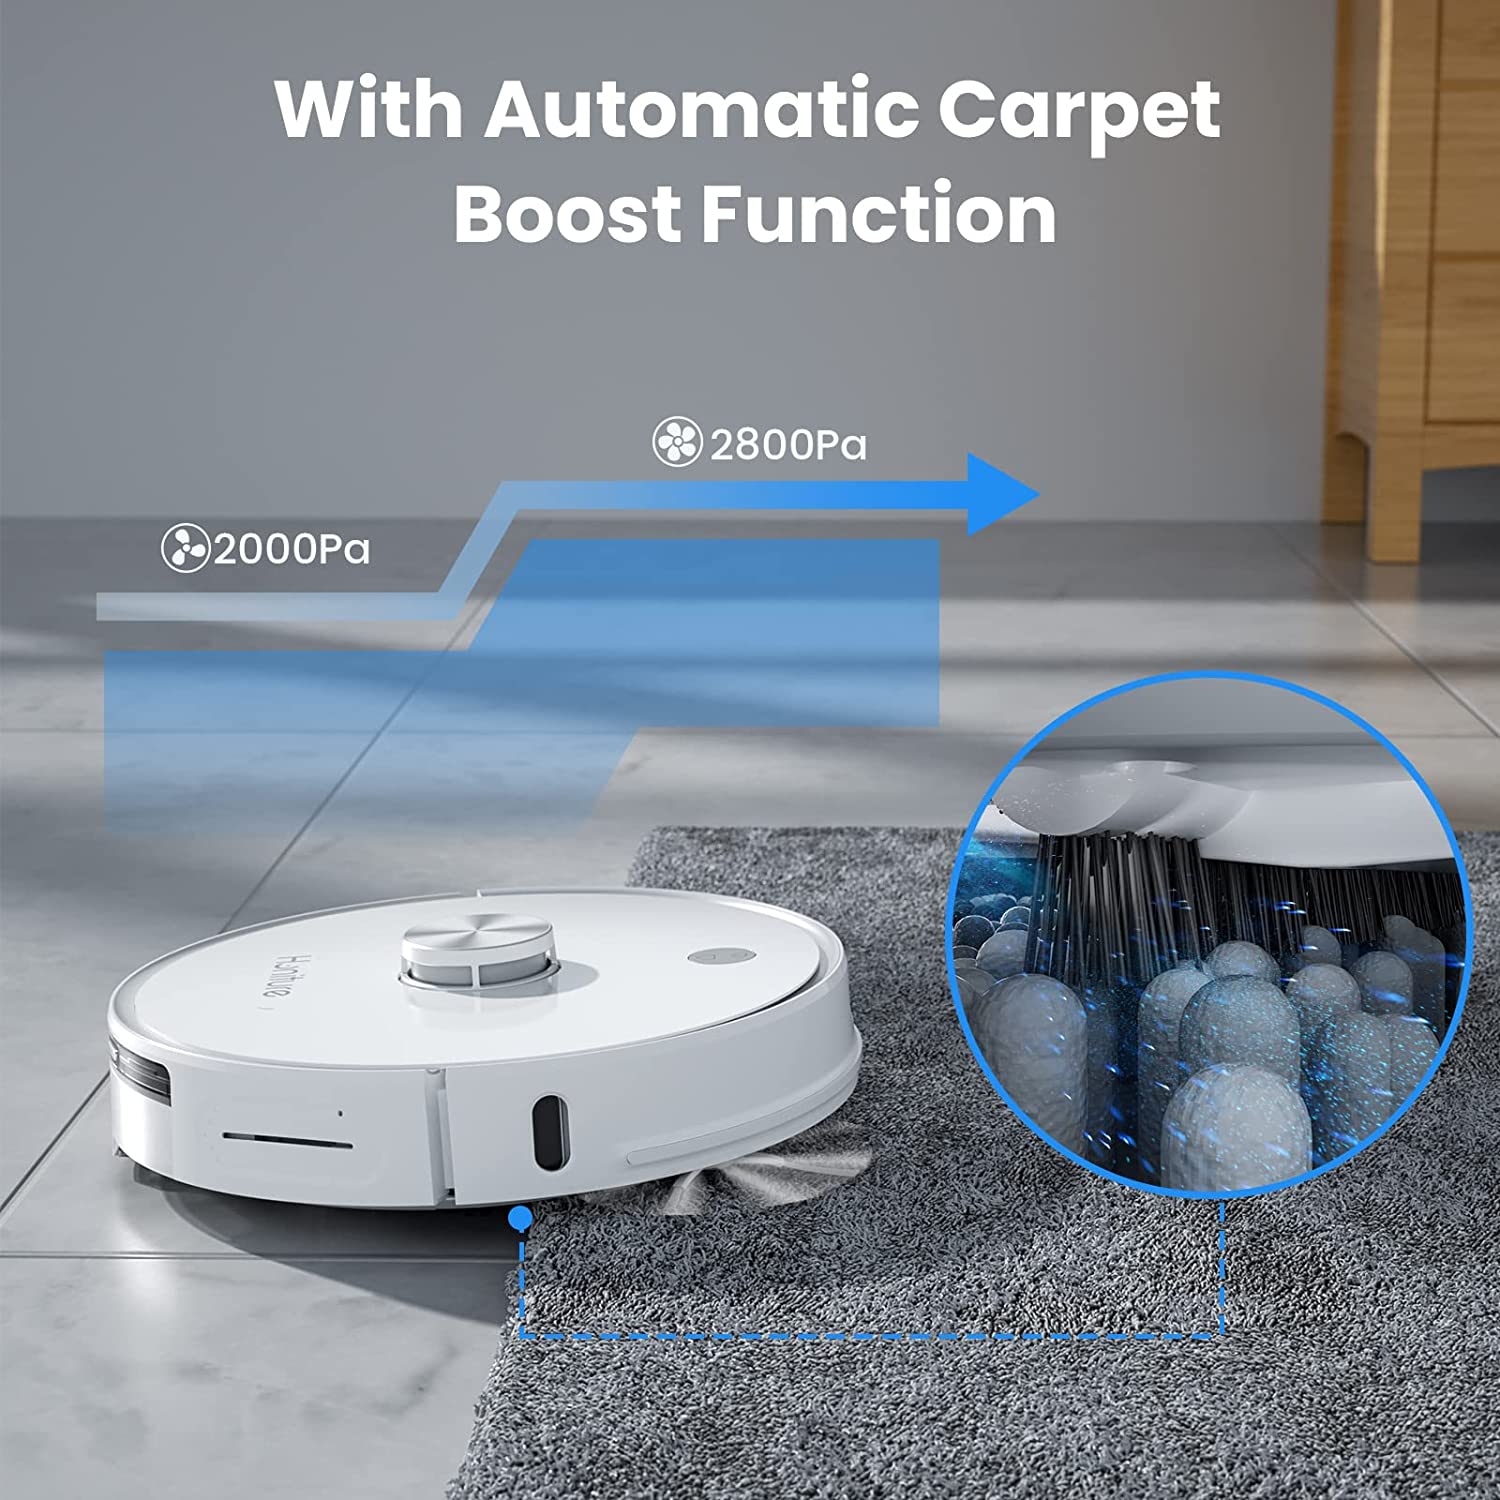 Roborock Auto Charging Pet Robotic Vacuum and Mop Self Emptying in